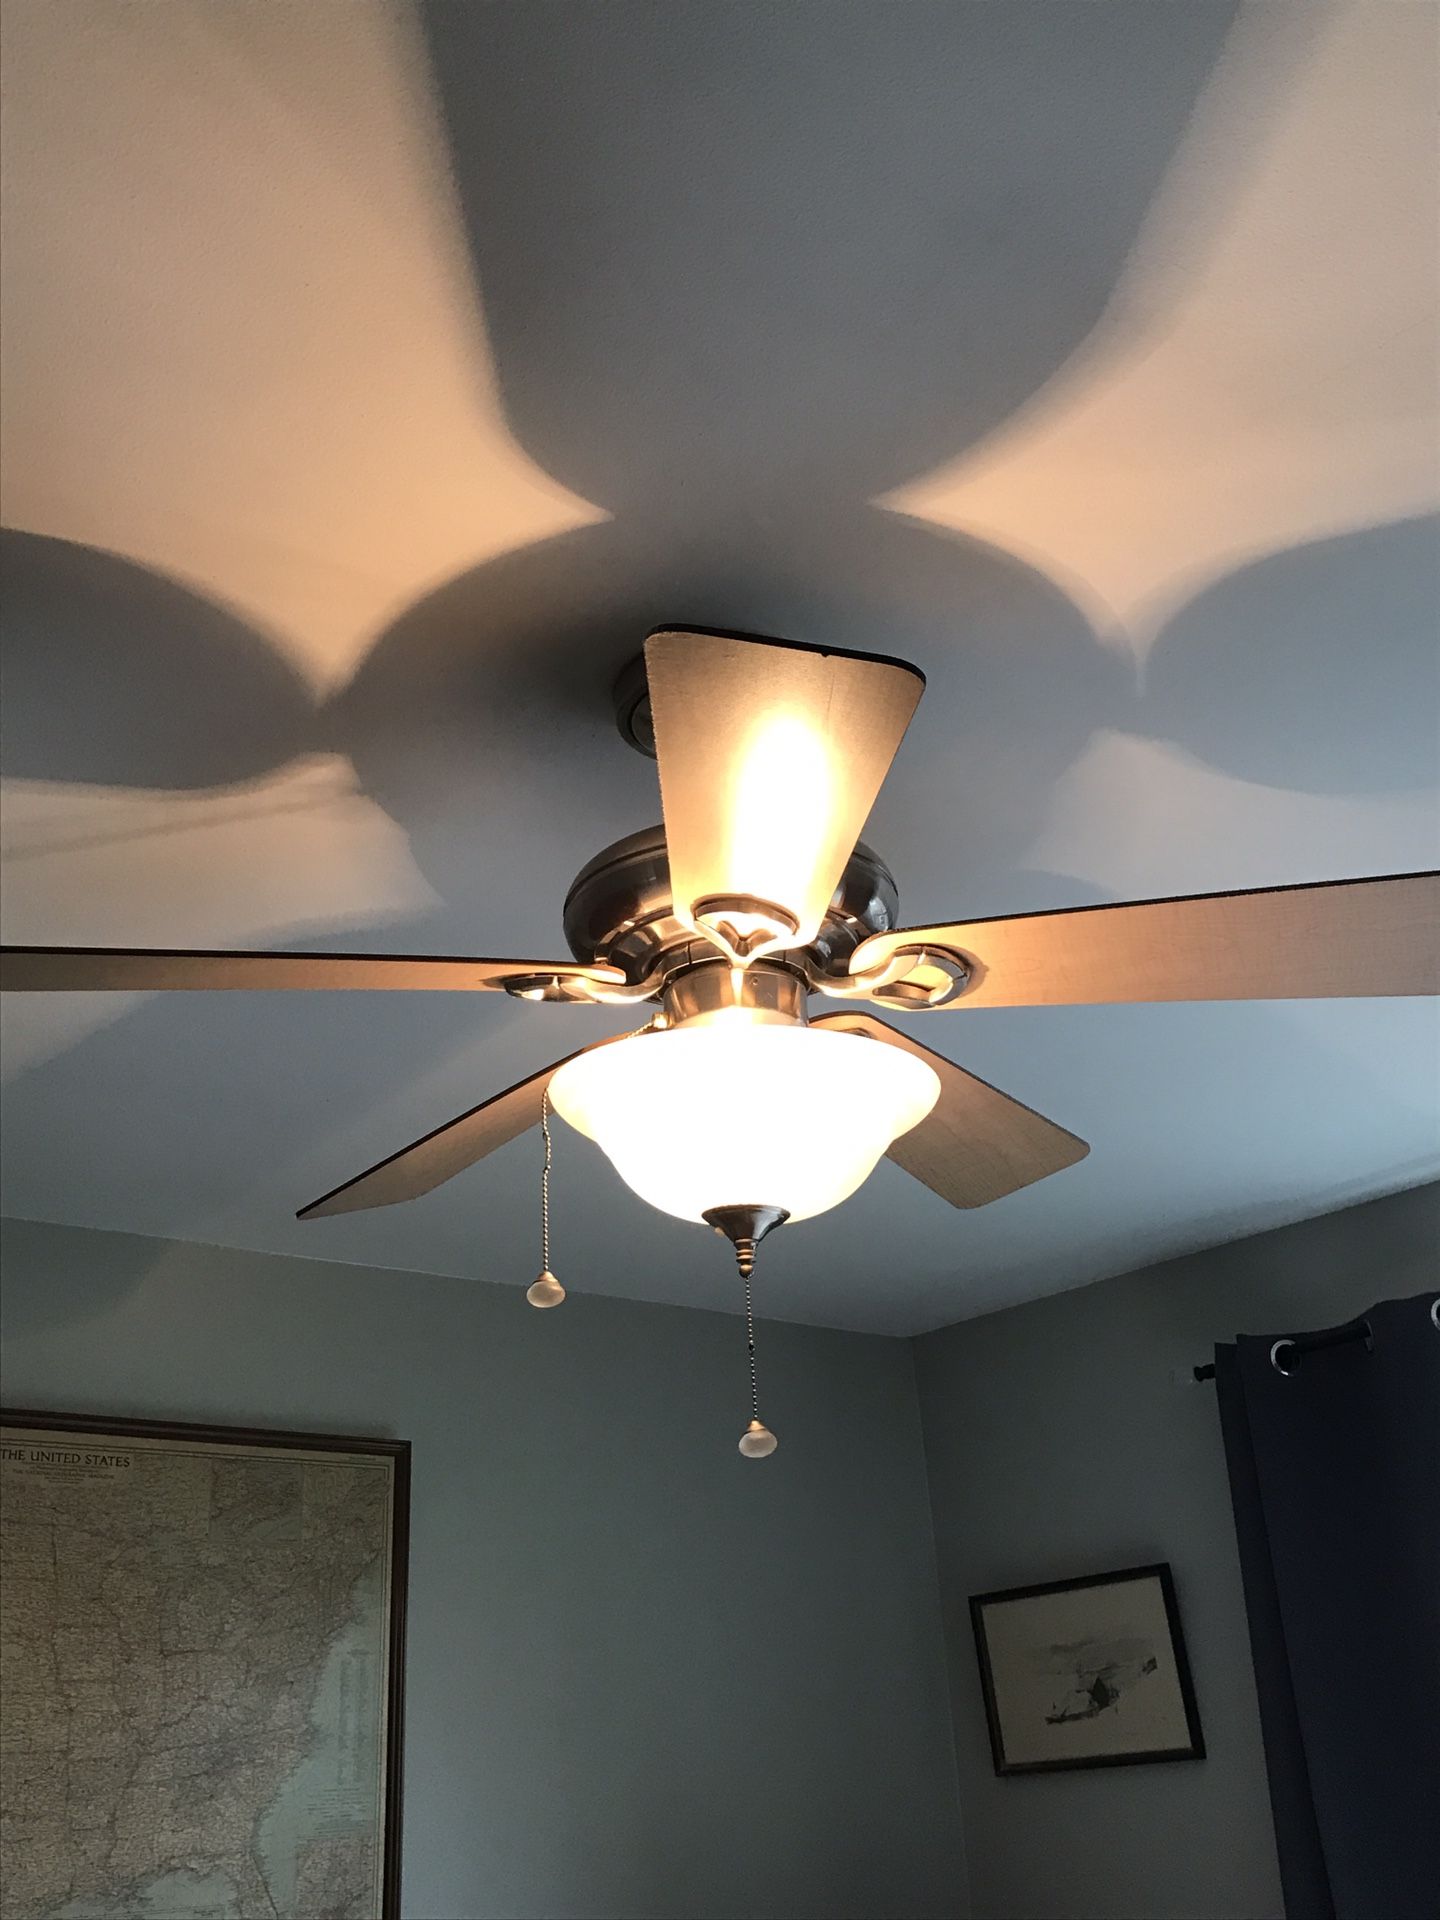 Ceiling fan light fixture 